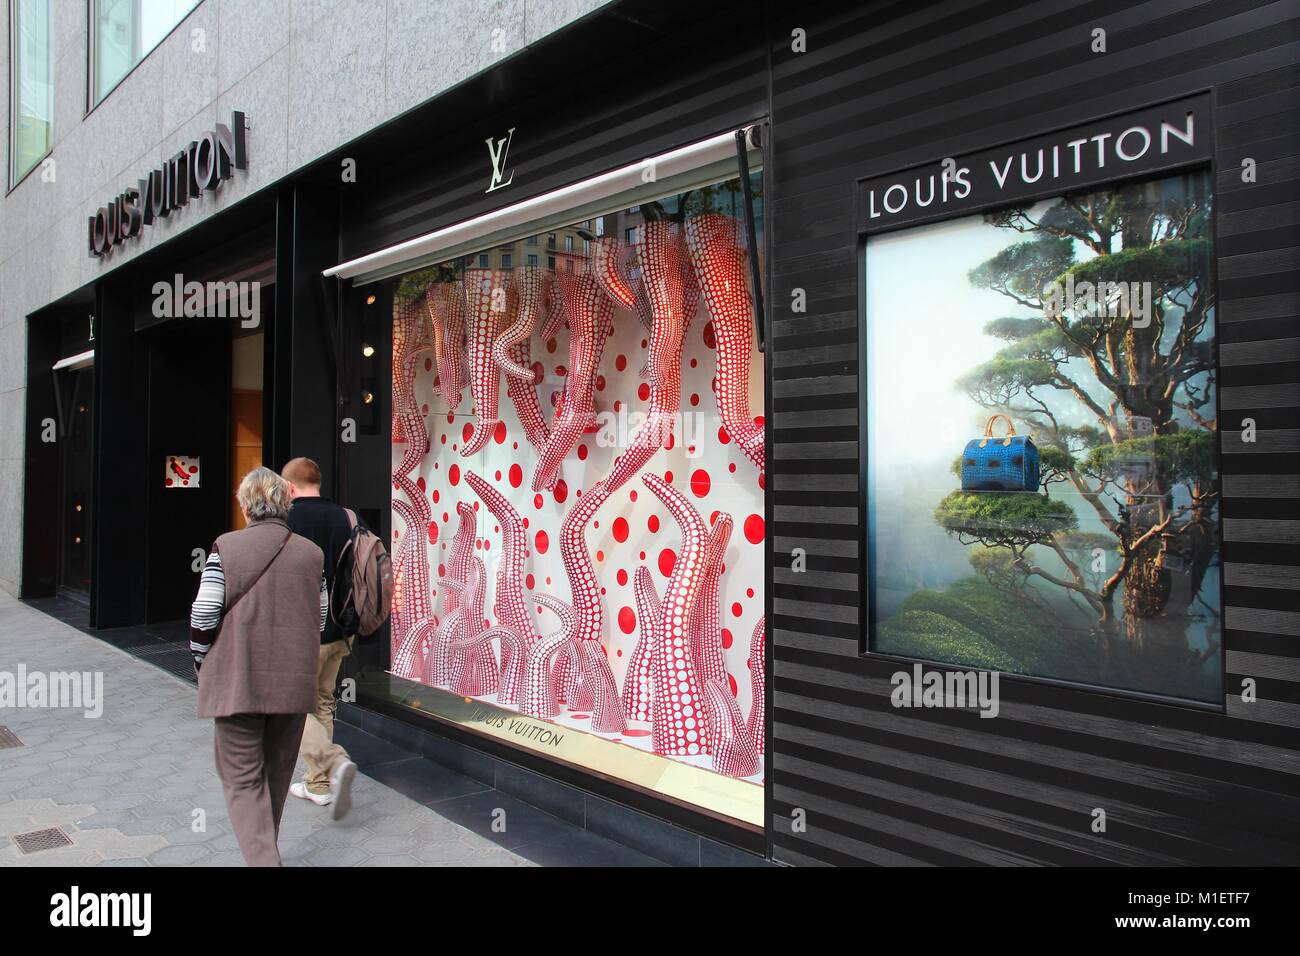 Tienda Louis Vuitton En Un Centro Comercial El Corte Ingles De Barcelona  Foto de archivo editorial - Imagen de ciudad, marca: 210619988